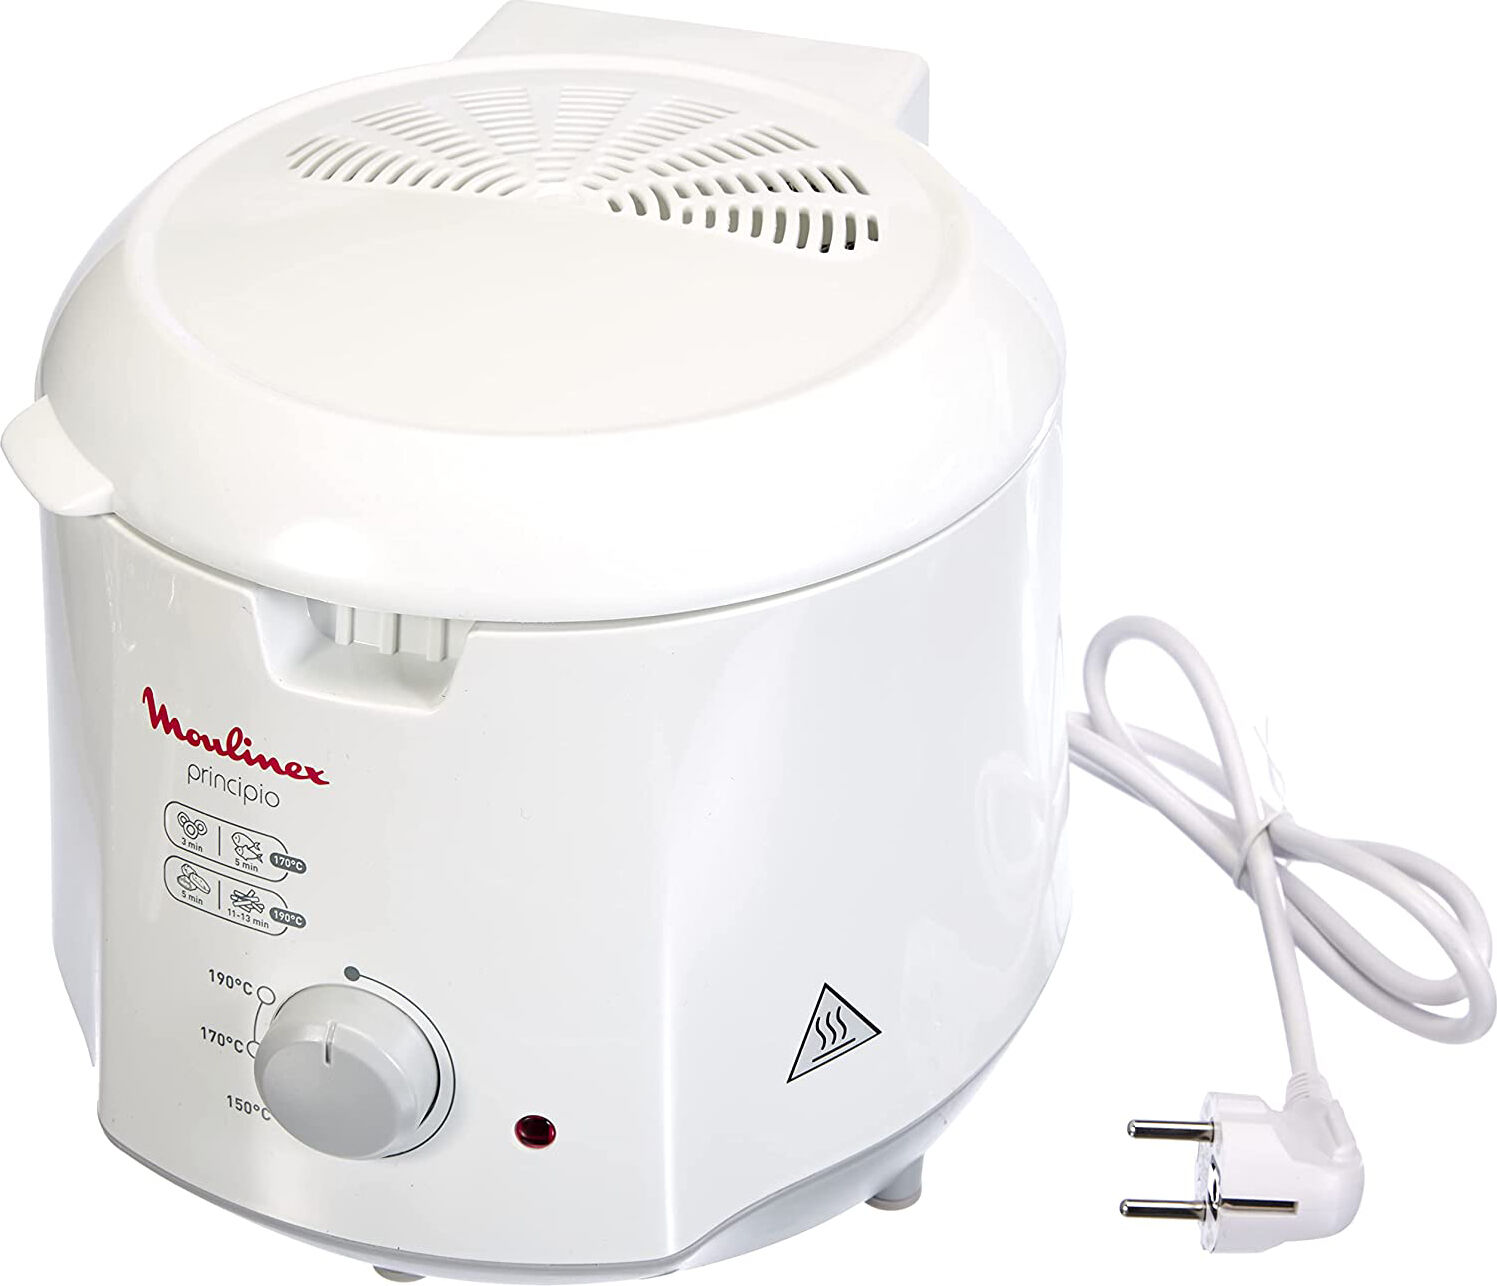 moulinex af2301 friggitrice elettrica capacità 1.2 litri potenza 1000 watt con termostato regolabile colore bianco - af2301